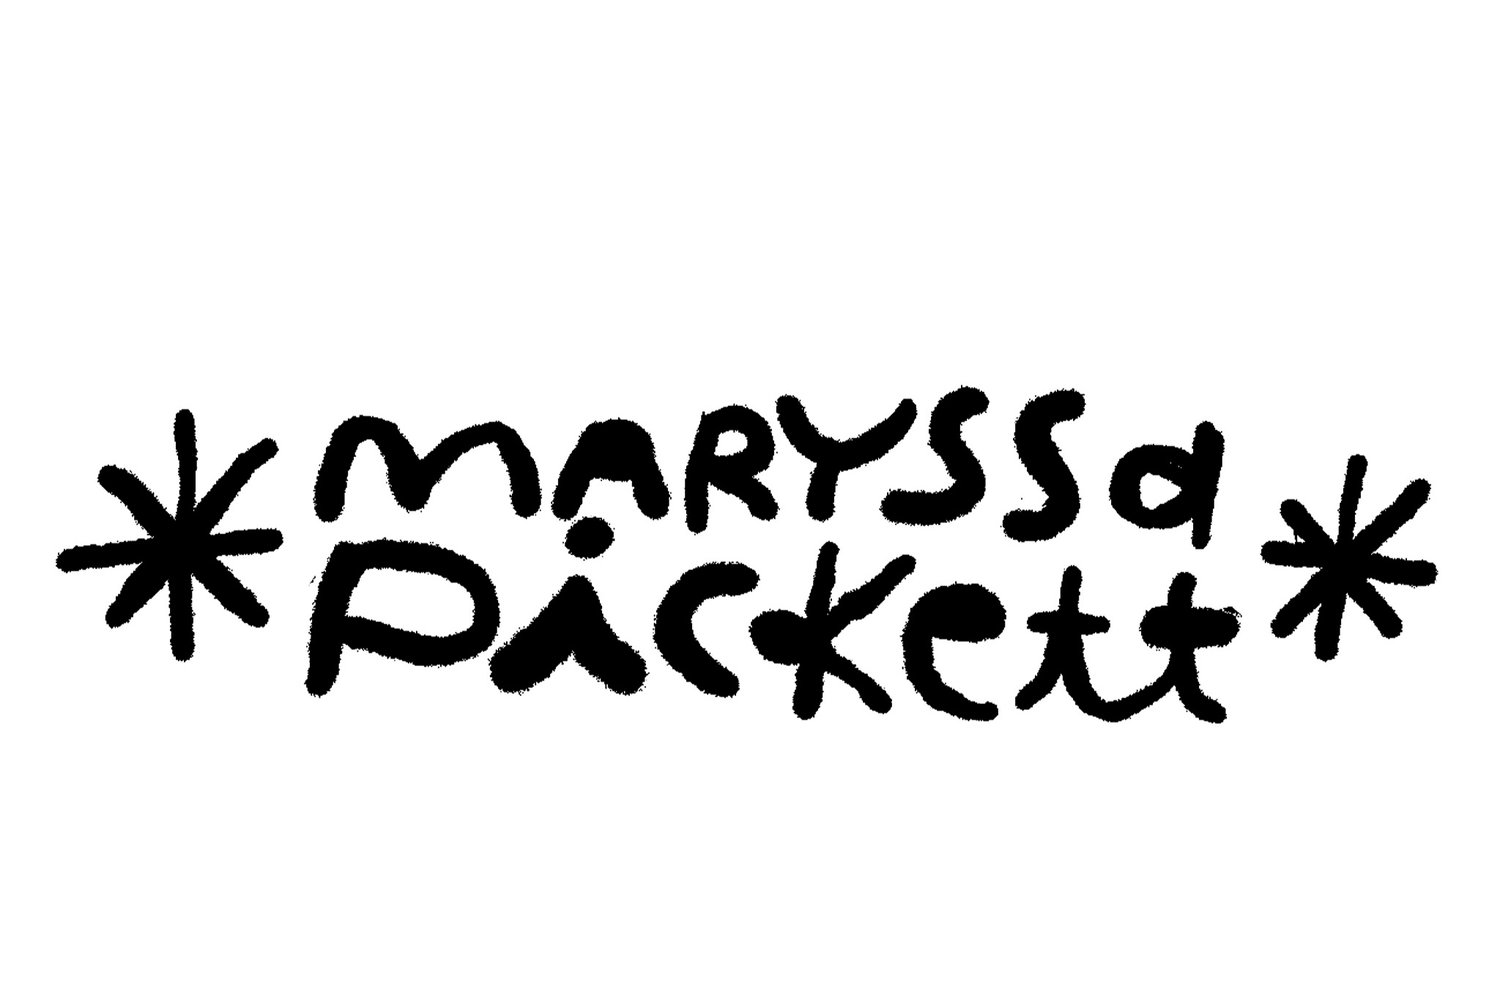 maryssa pickett